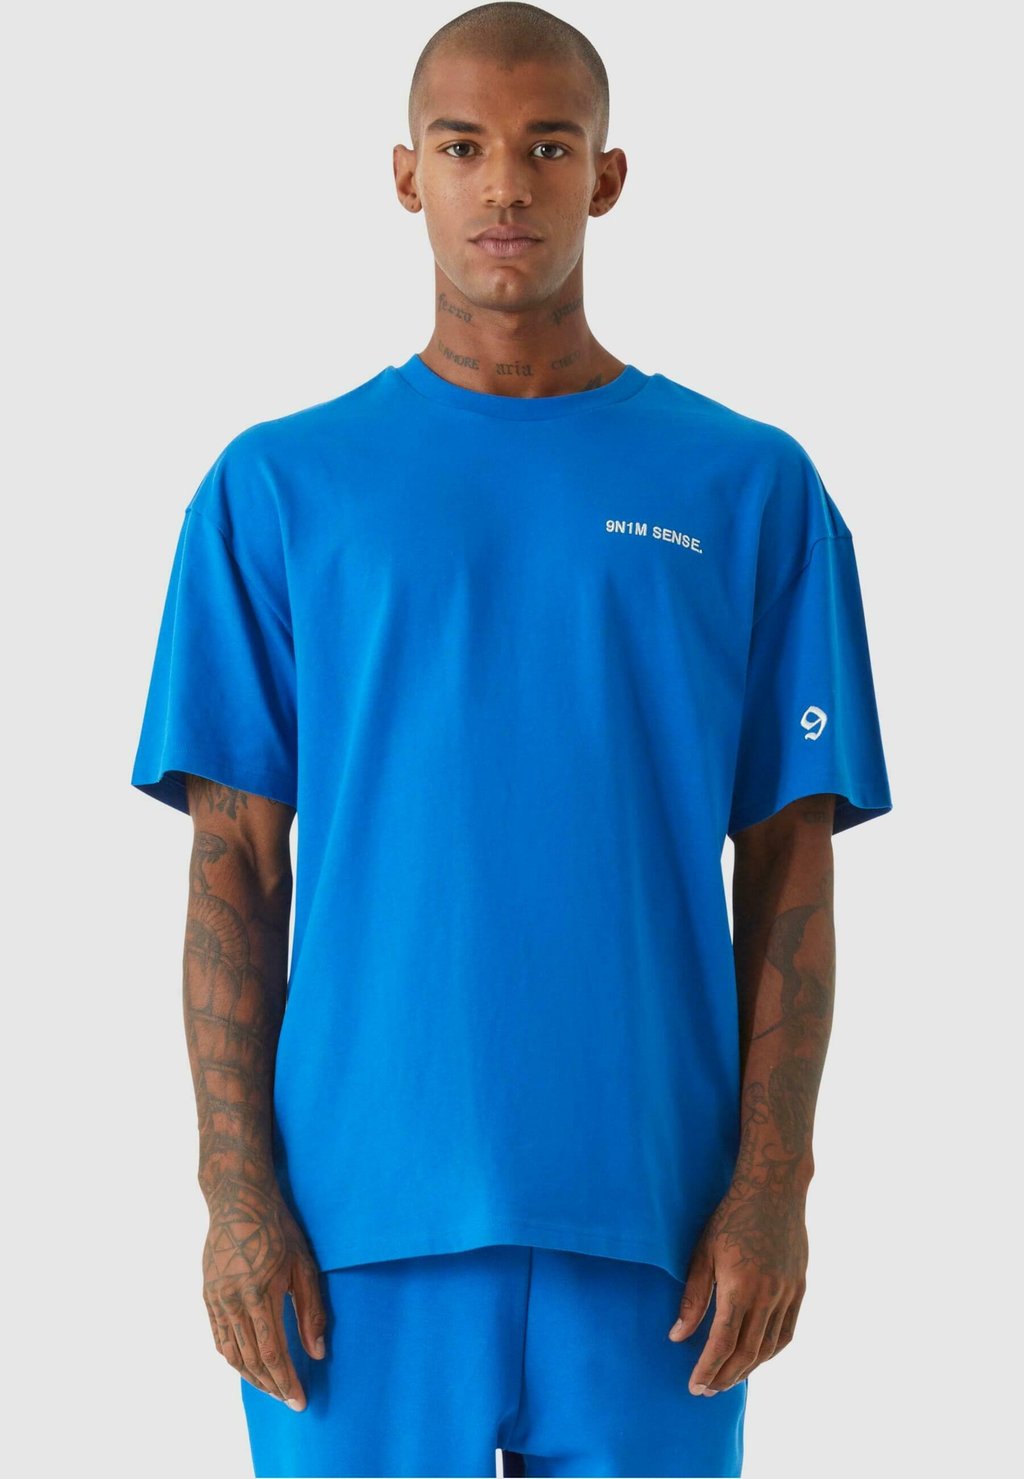 Базовая футболка Essential 9N1M SENSE, цвет cobaltblue